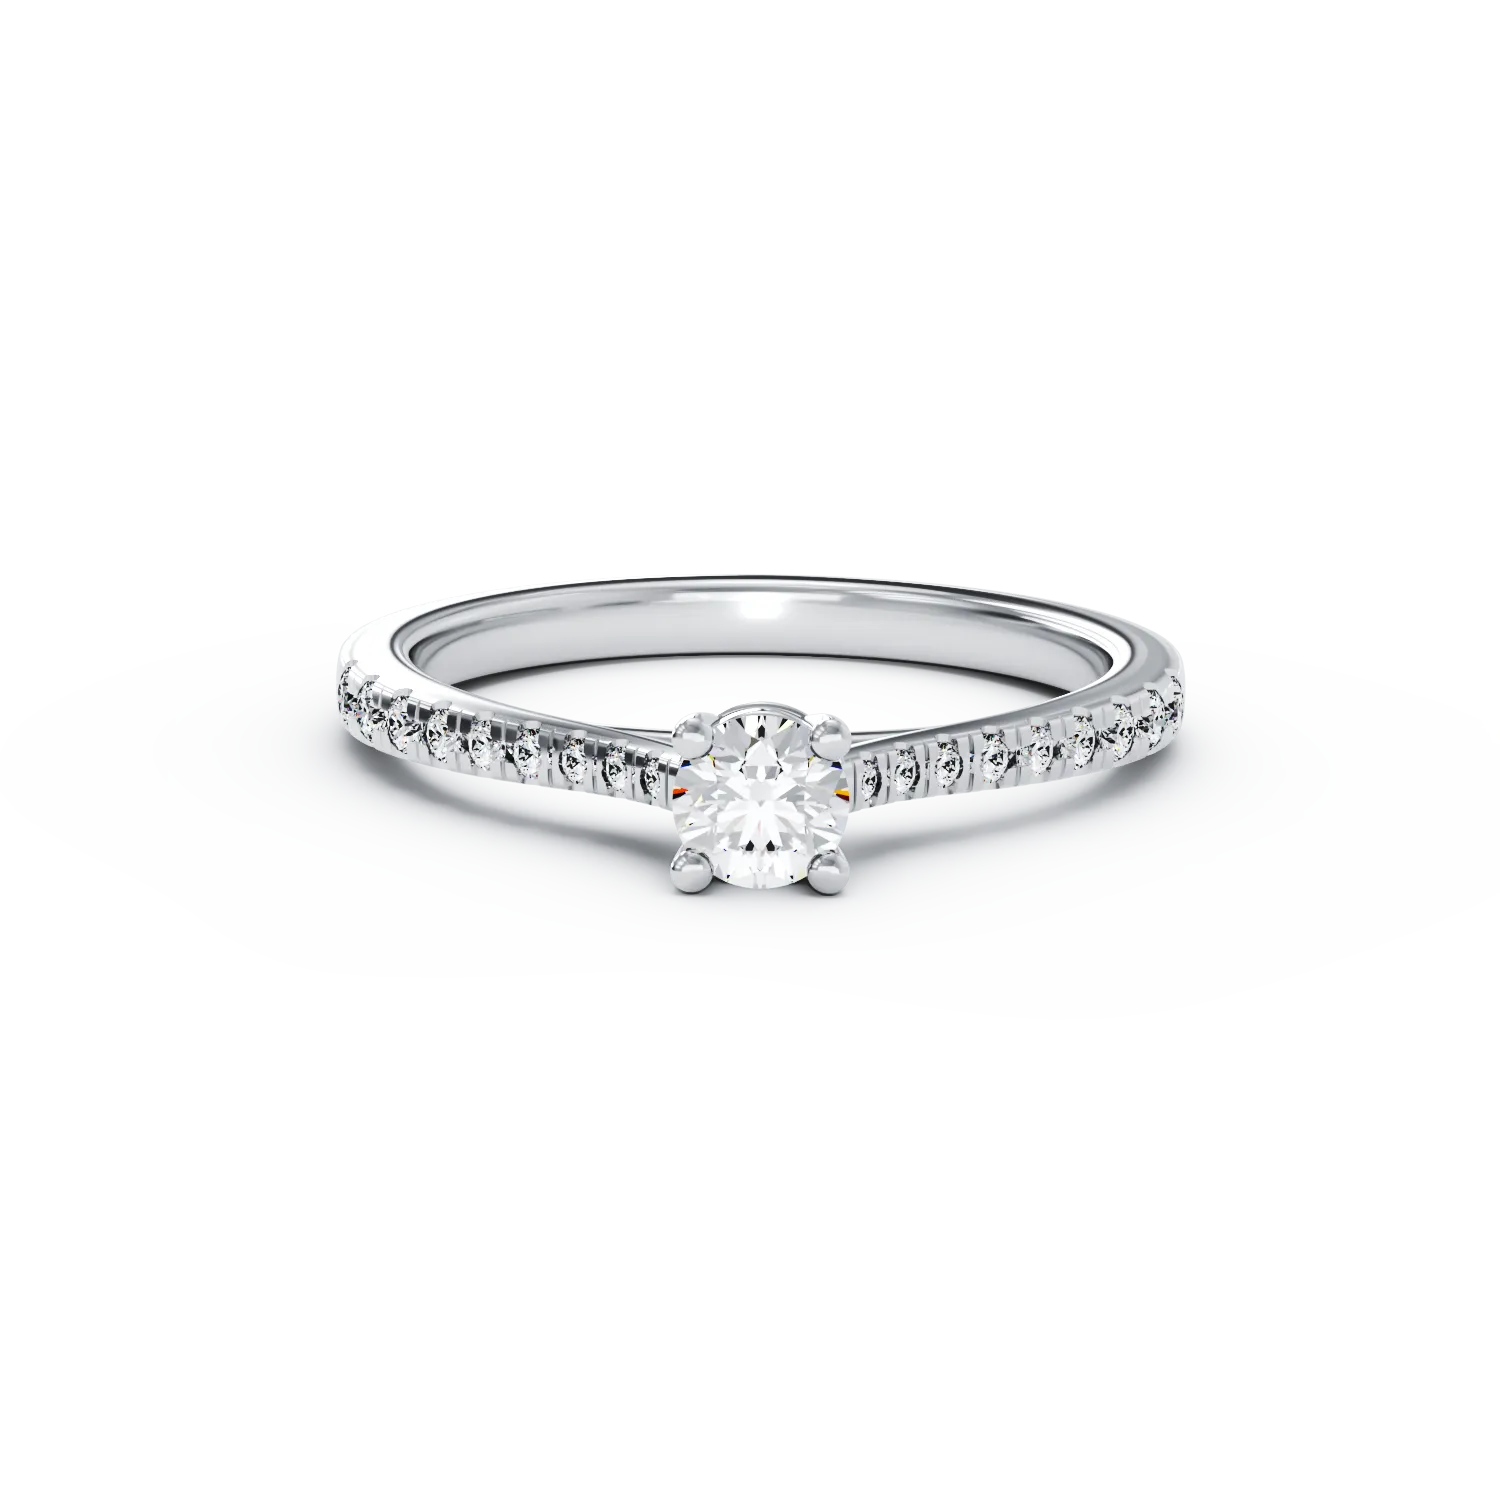 Eljegyzési gyűrű 18K-os fehér aranyból 0,16ct gyémánttal és 0,17ct gyémánttal. Gramm: 2,59